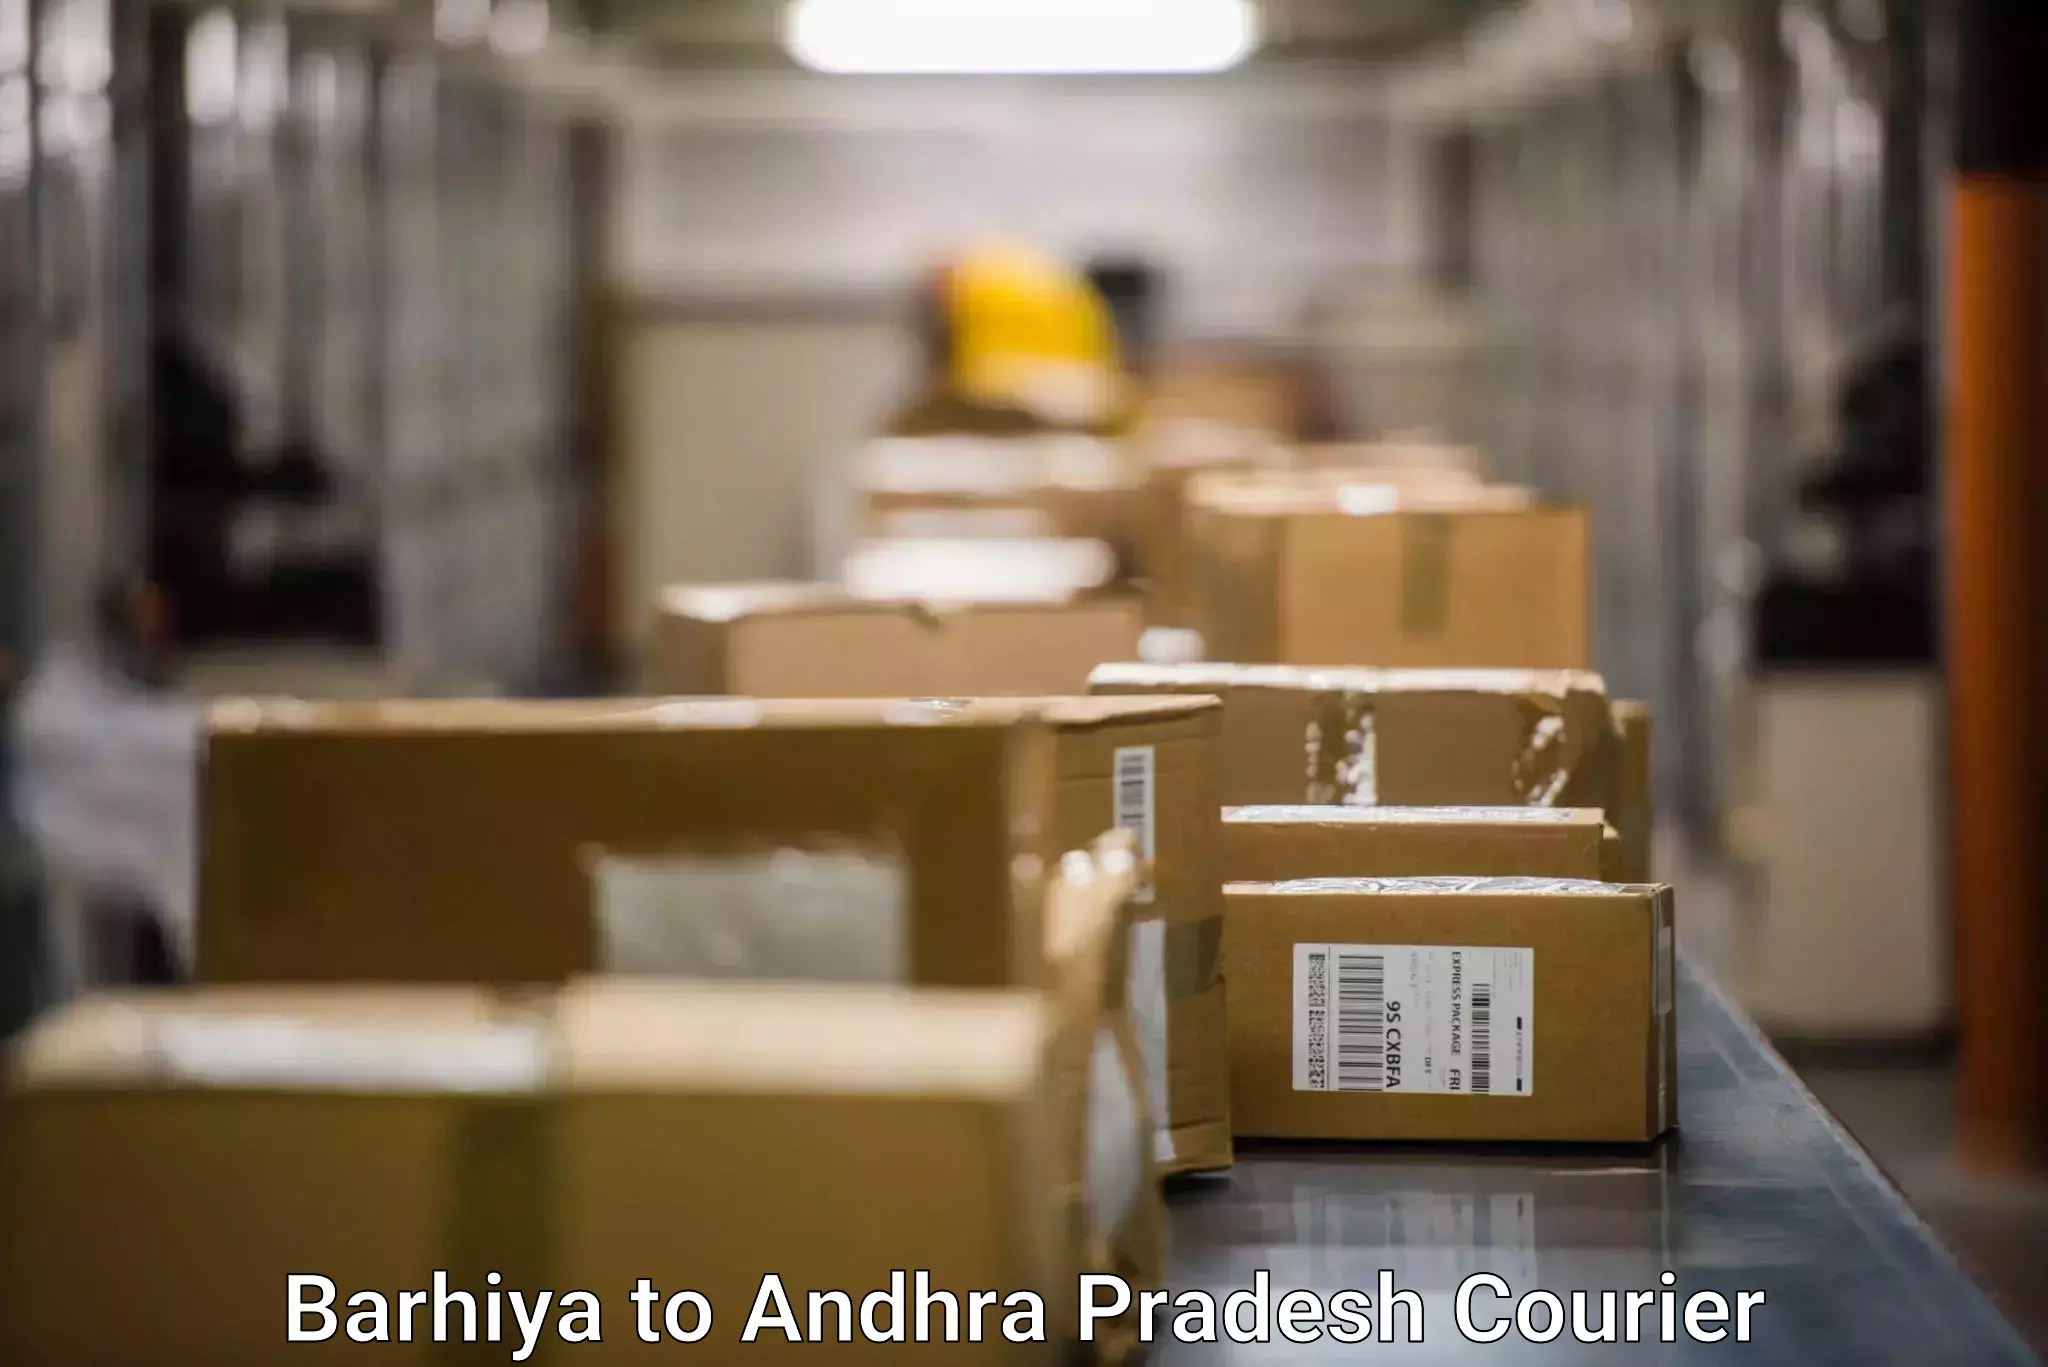 Door-to-door shipment Barhiya to Tirupati